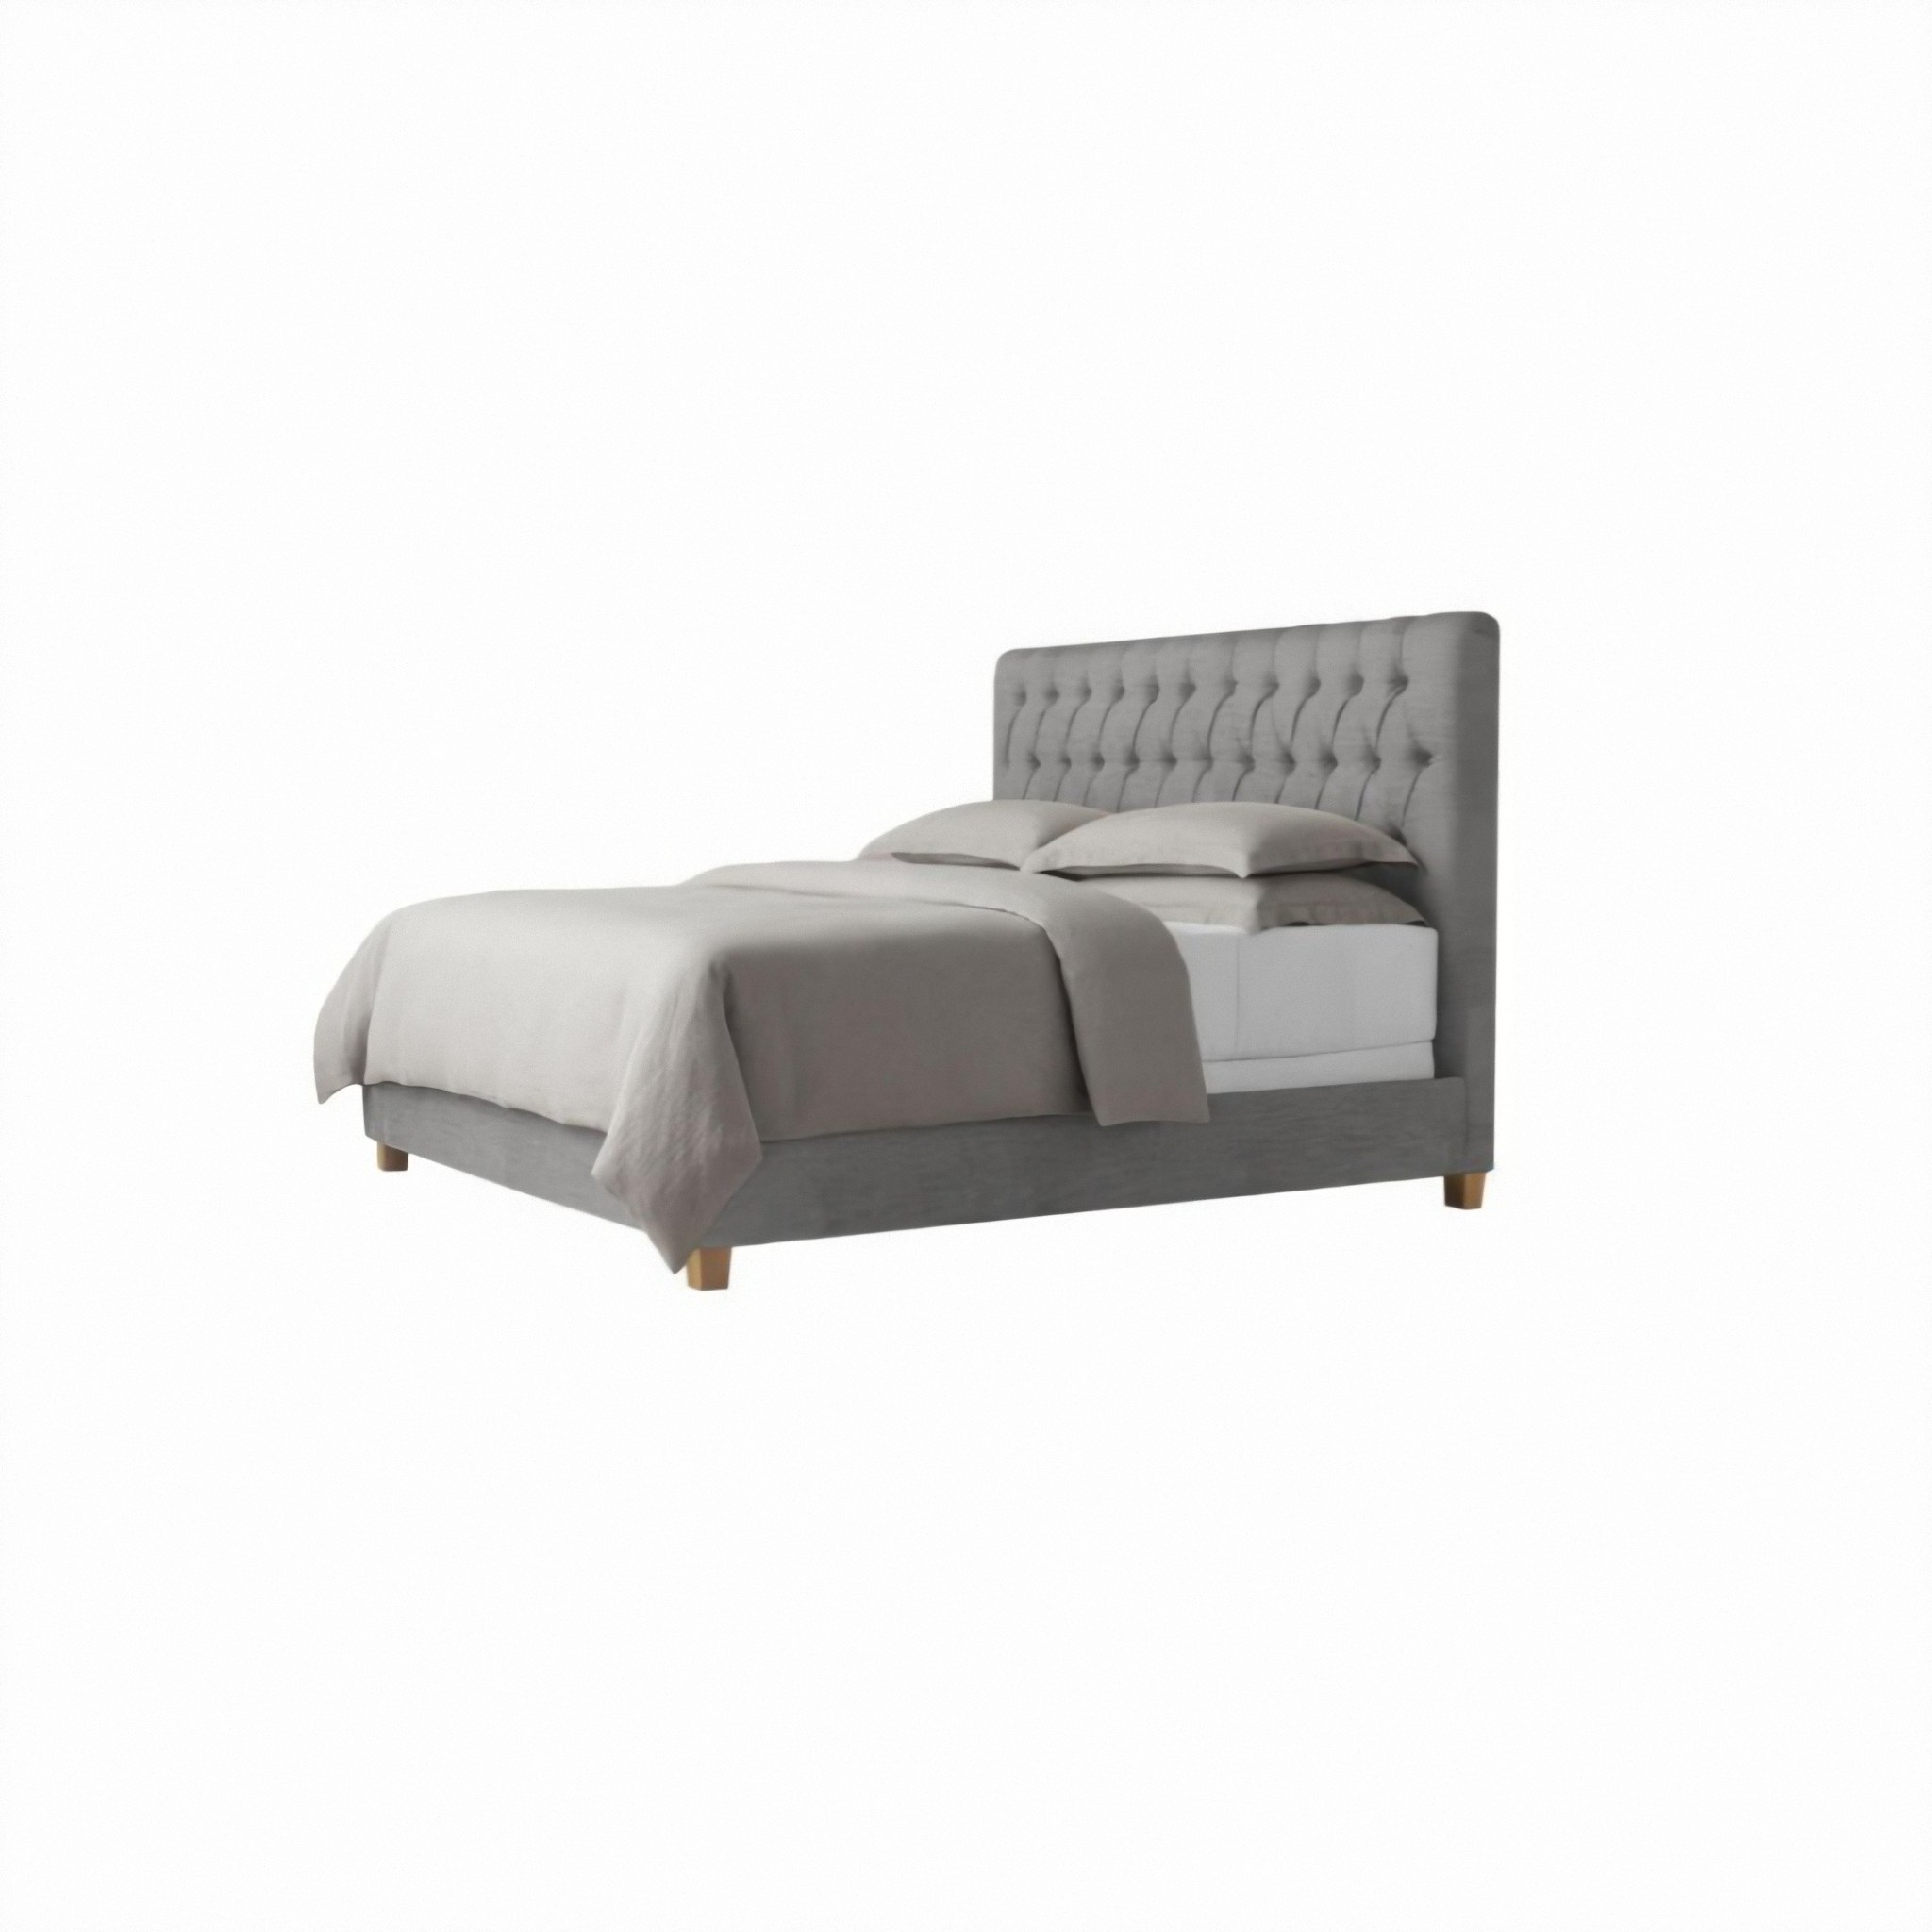 تخت خواب یک نفره مدل fairmont سایز 90×200 سانتی متر